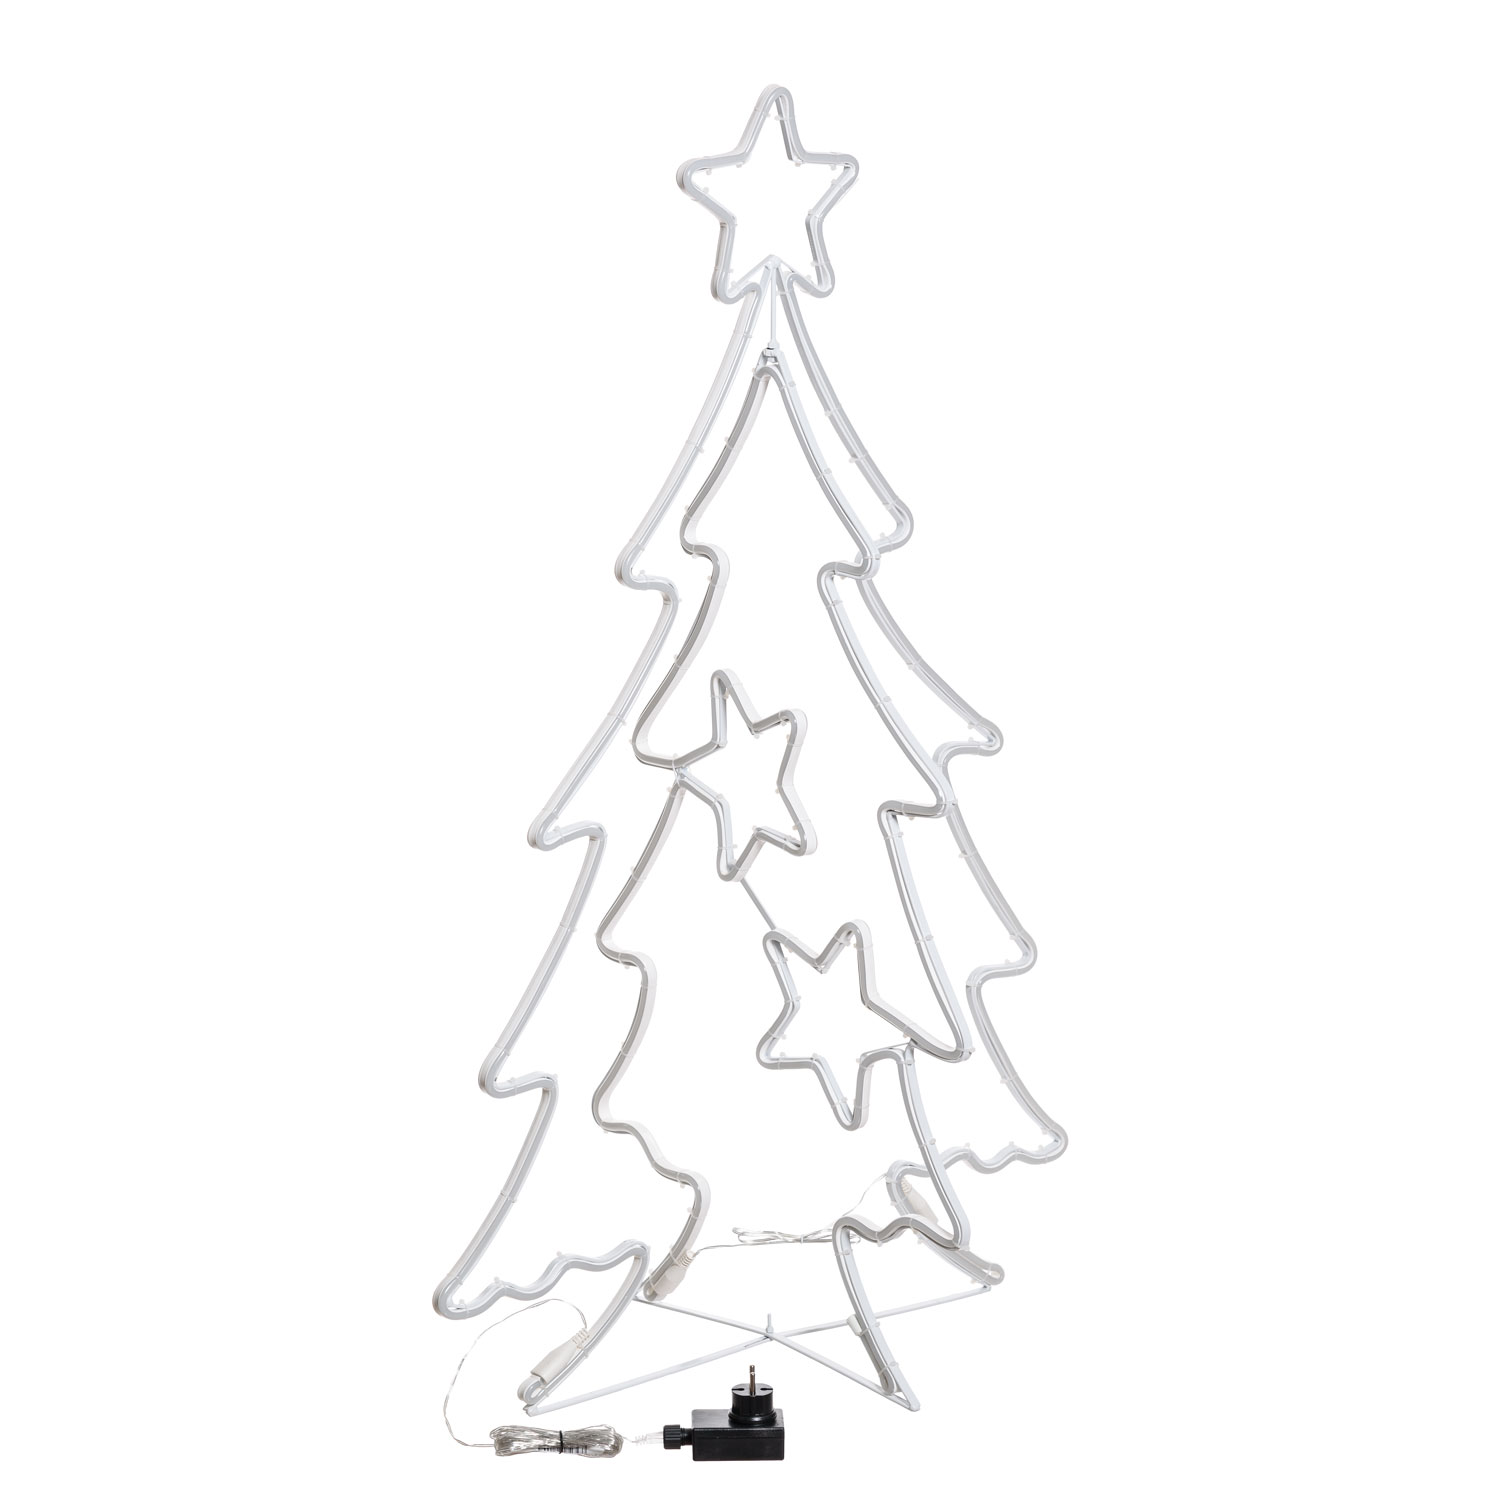 und Außendekoration LED Stern Weihnachtsbaum Zylinderhut,Joycabin 9,5 in 3D Weihnachtsbaum Sternlicht mit 5 Lichtmodi und Fernbedienung,Weihnachtsfeier Traditionelle Baumdekoration Urlaub Innen 